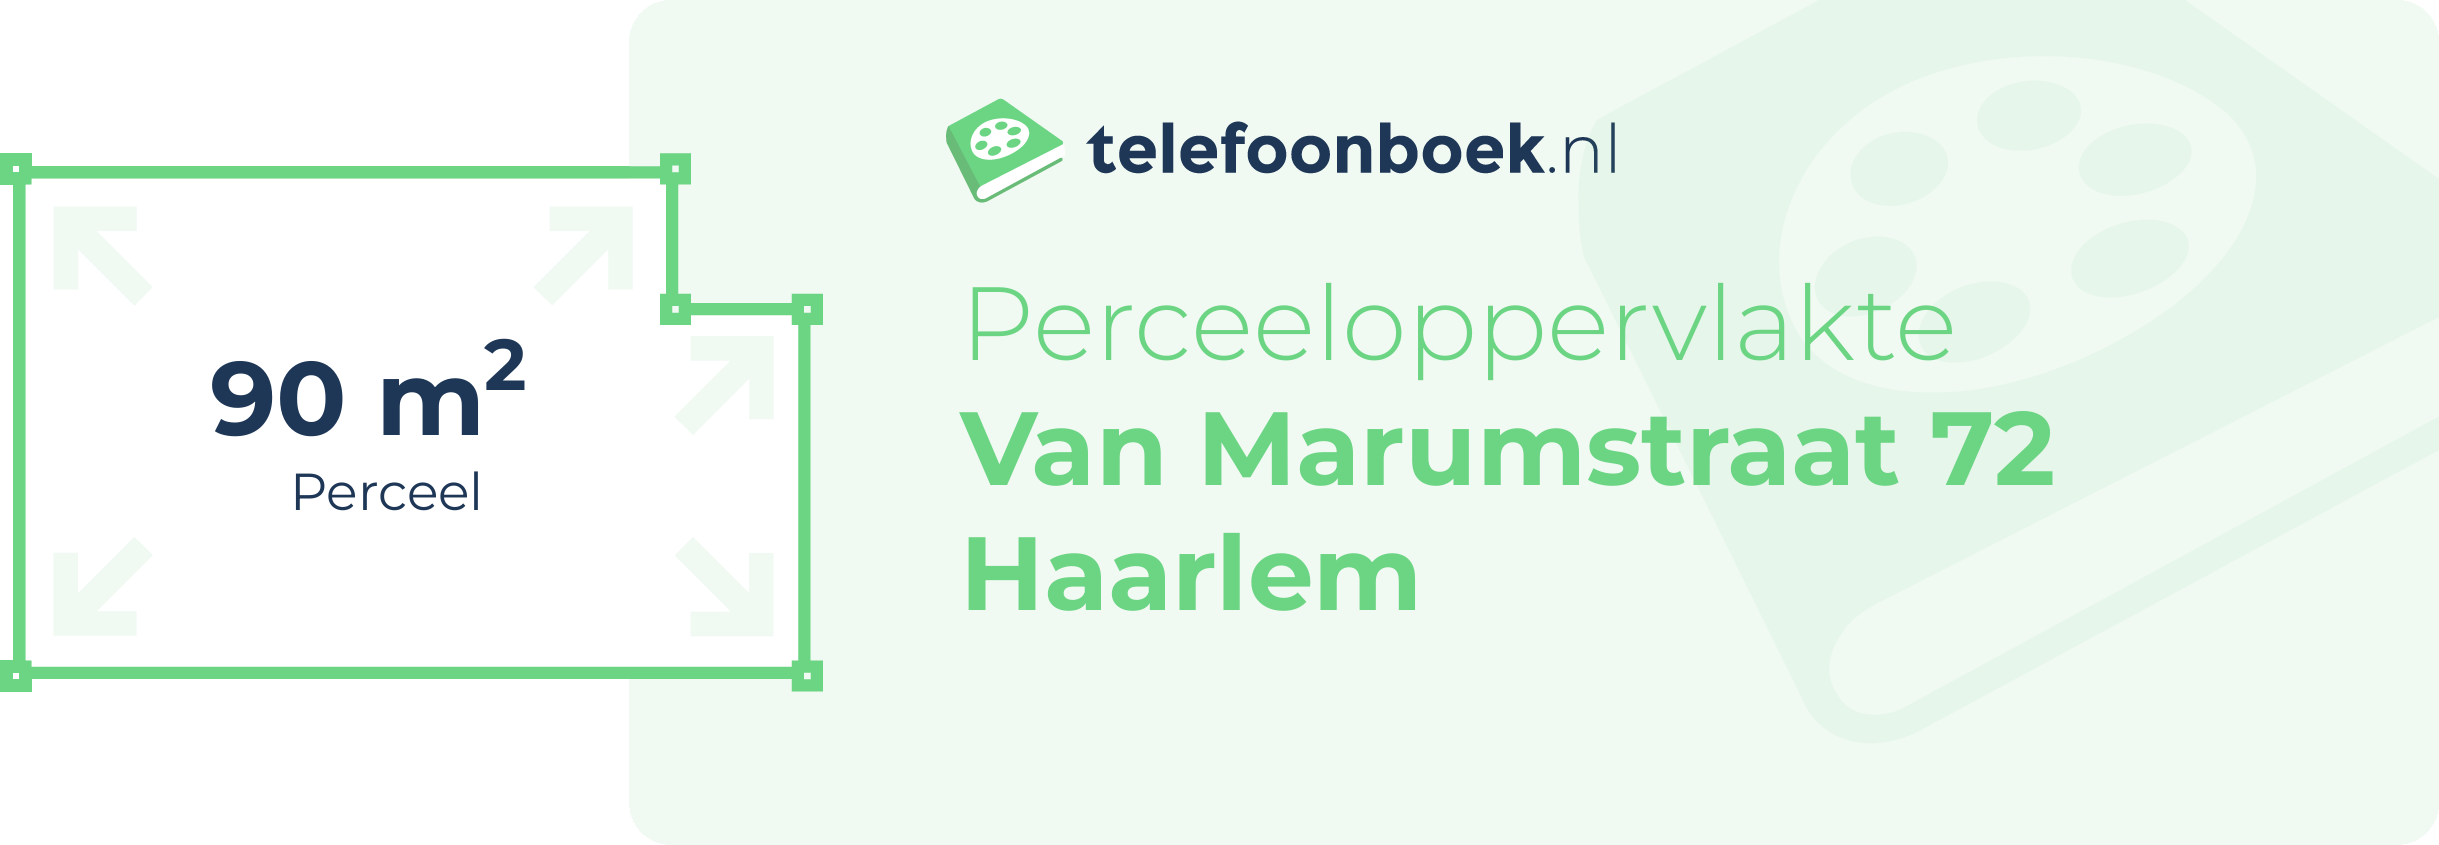 Perceeloppervlakte Van Marumstraat 72 Haarlem